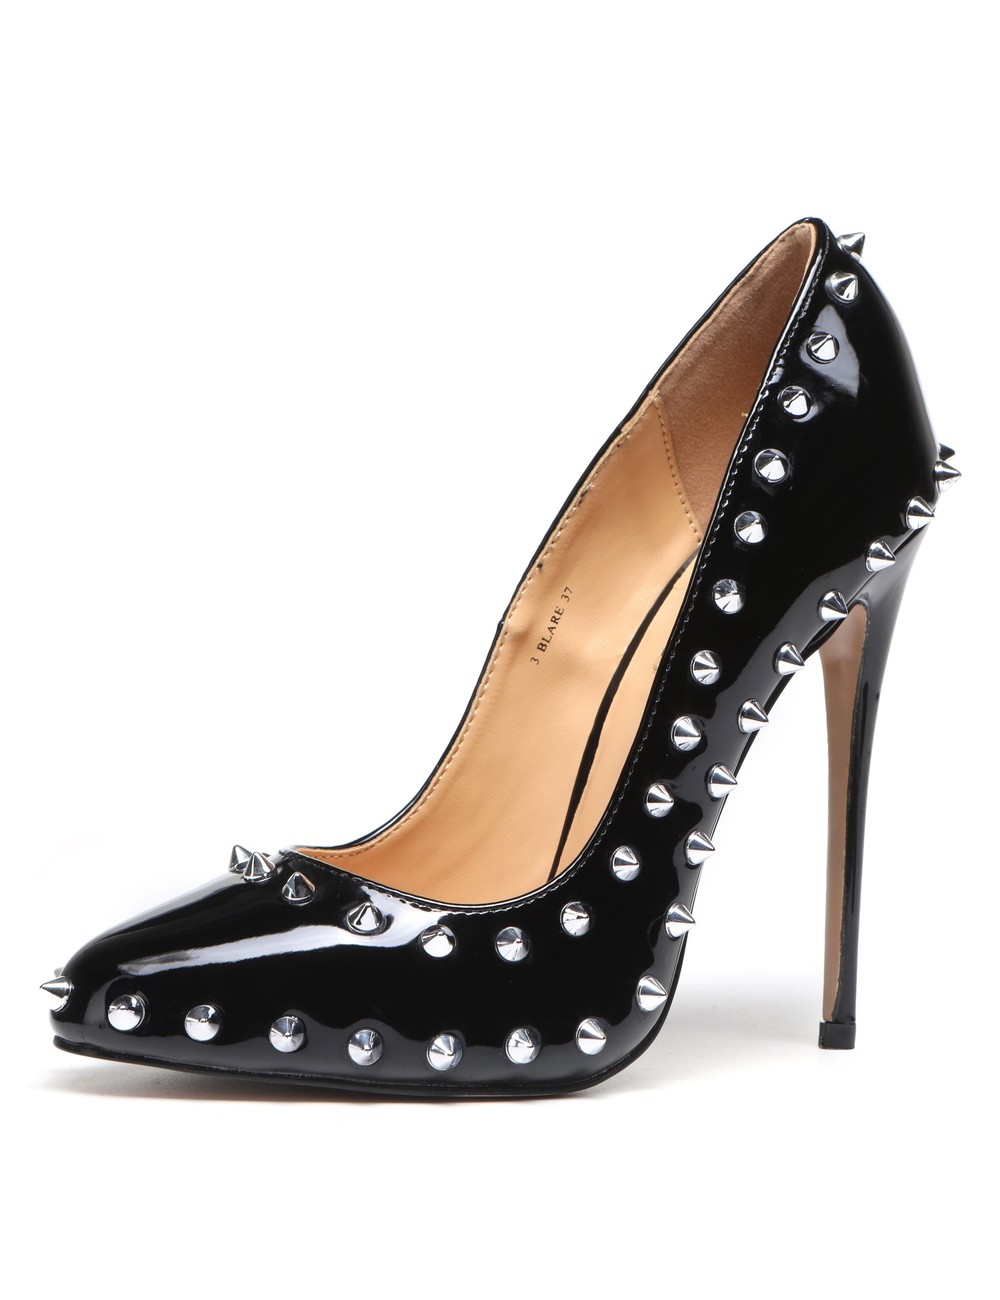 Giaro BLARE BLACK SHINY - Shoebidoo Shoes | Giaro high heels